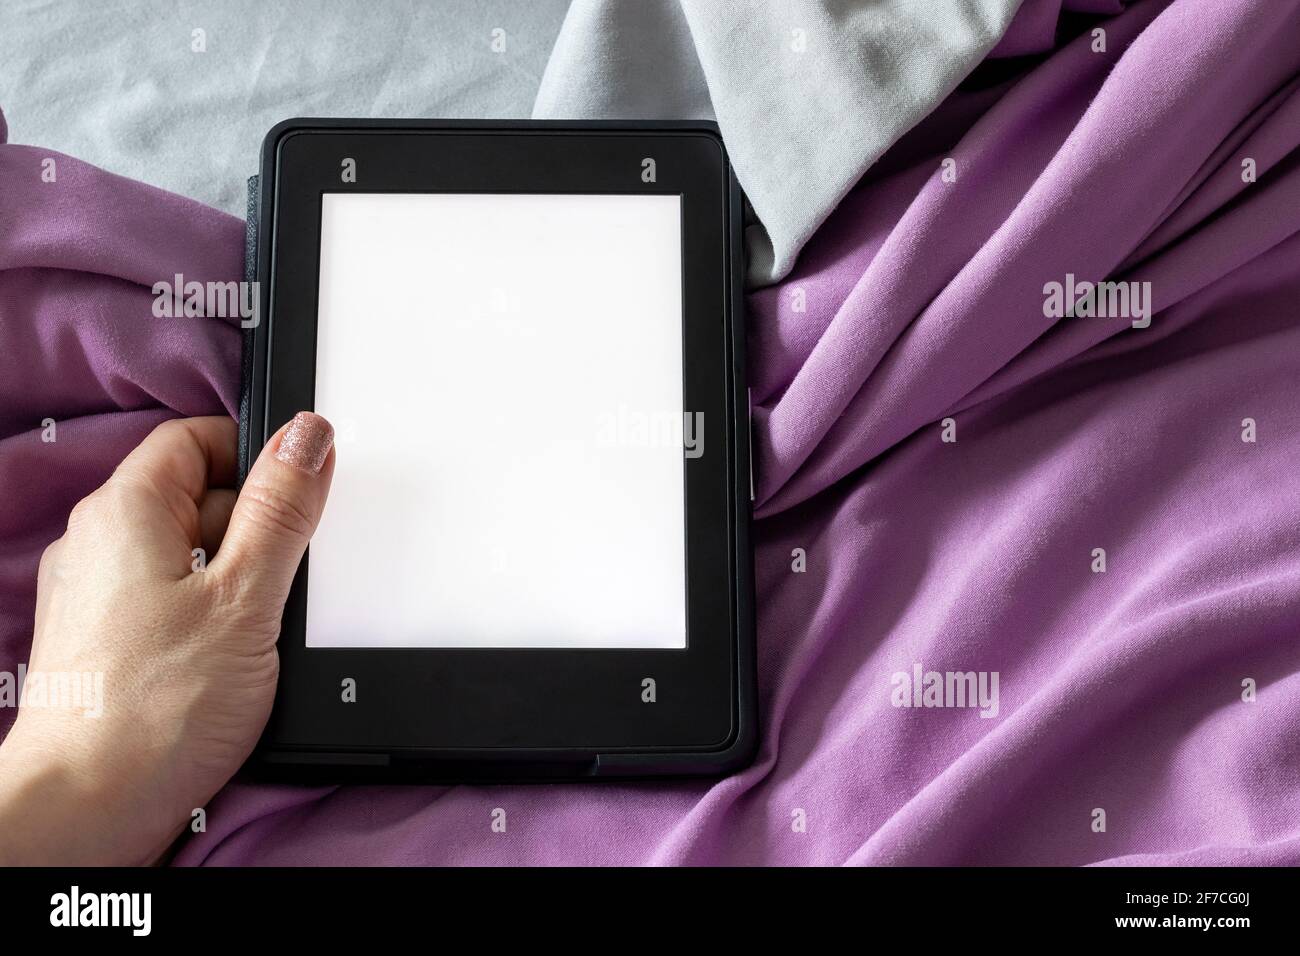 Ein modernes elektronisches E-Reader mit einem leeren Bildschirm in weiblicher Hand auf einem grauen und violetten Bett. Mockup Tablet auf Microfaser-Bettwäsche Nahaufnahme Stockfoto